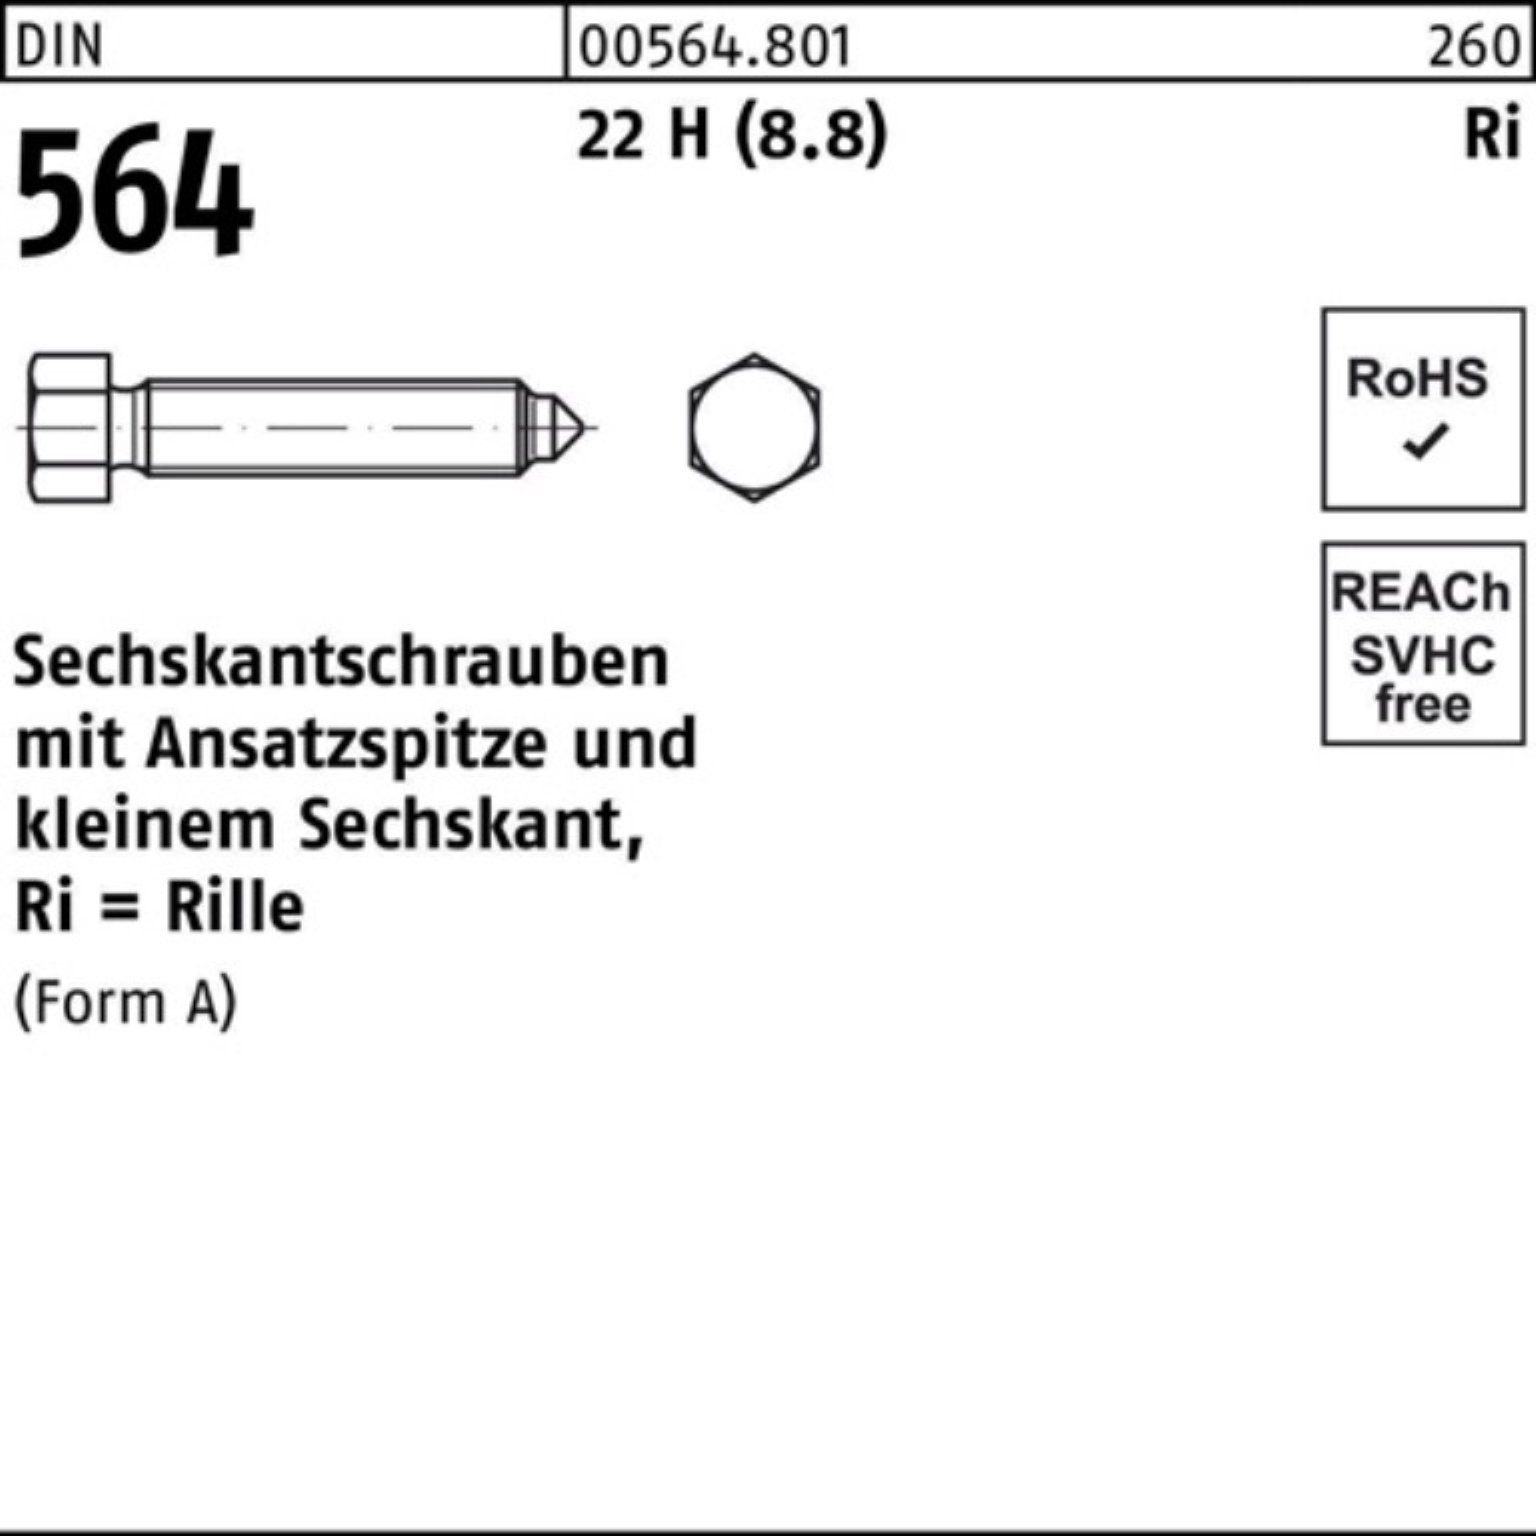 Reyher Sechskantschraube 100er AM Sechskantschraube Ansatzspitze 22 H DIN (8.8) 50 564 10x Pack